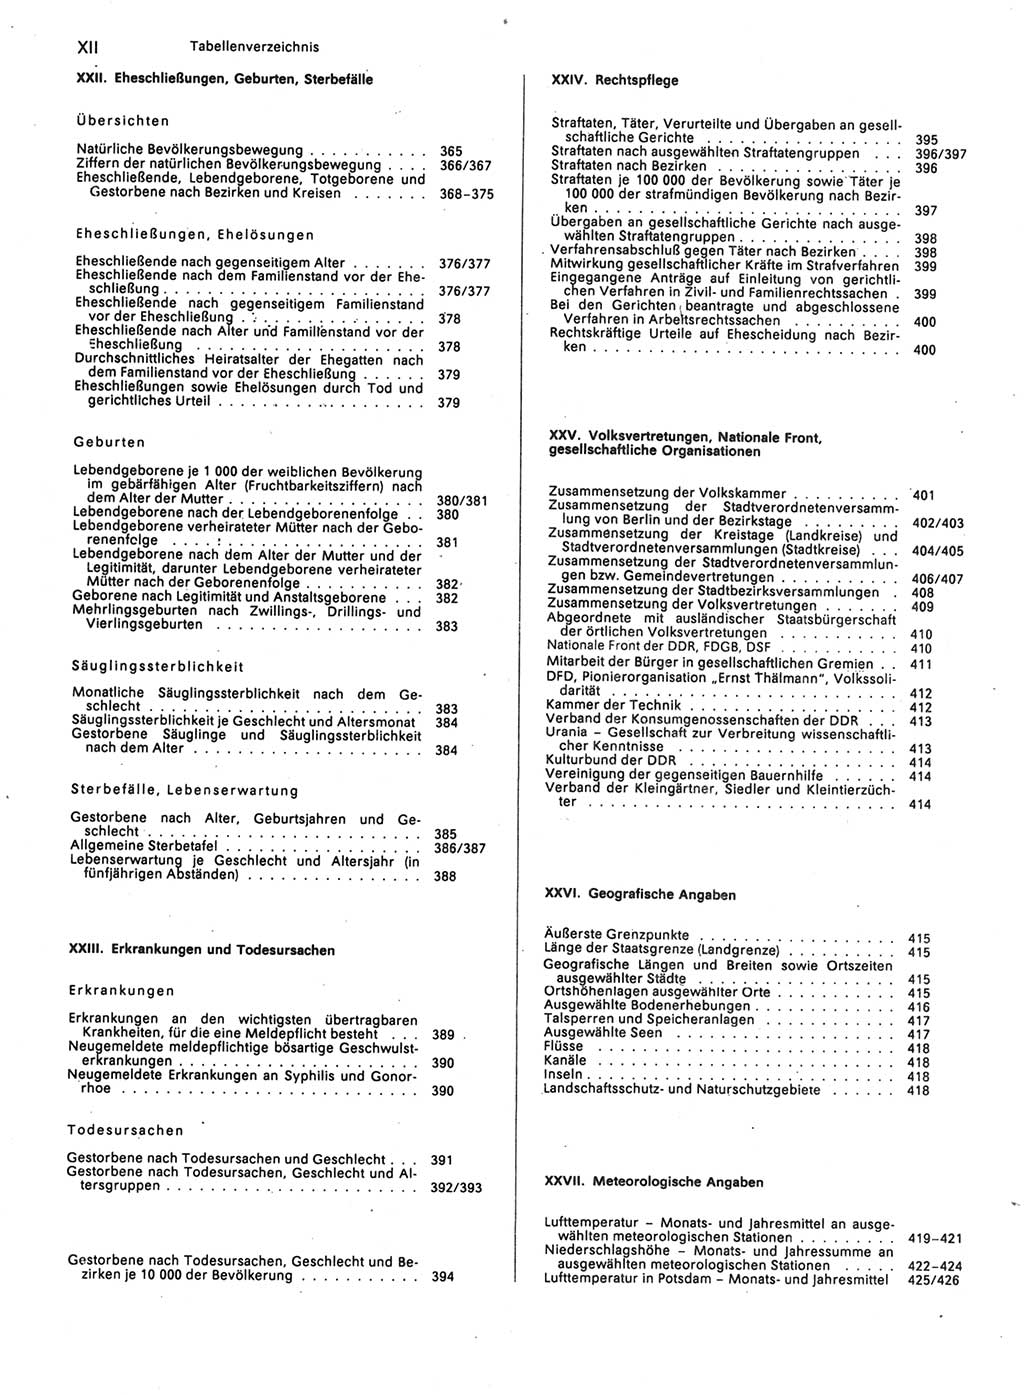 Statistisches Jahrbuch der Deutschen Demokratischen Republik (DDR) 1989, Seite 12 (Stat. Jb. DDR 1989, S. 12)